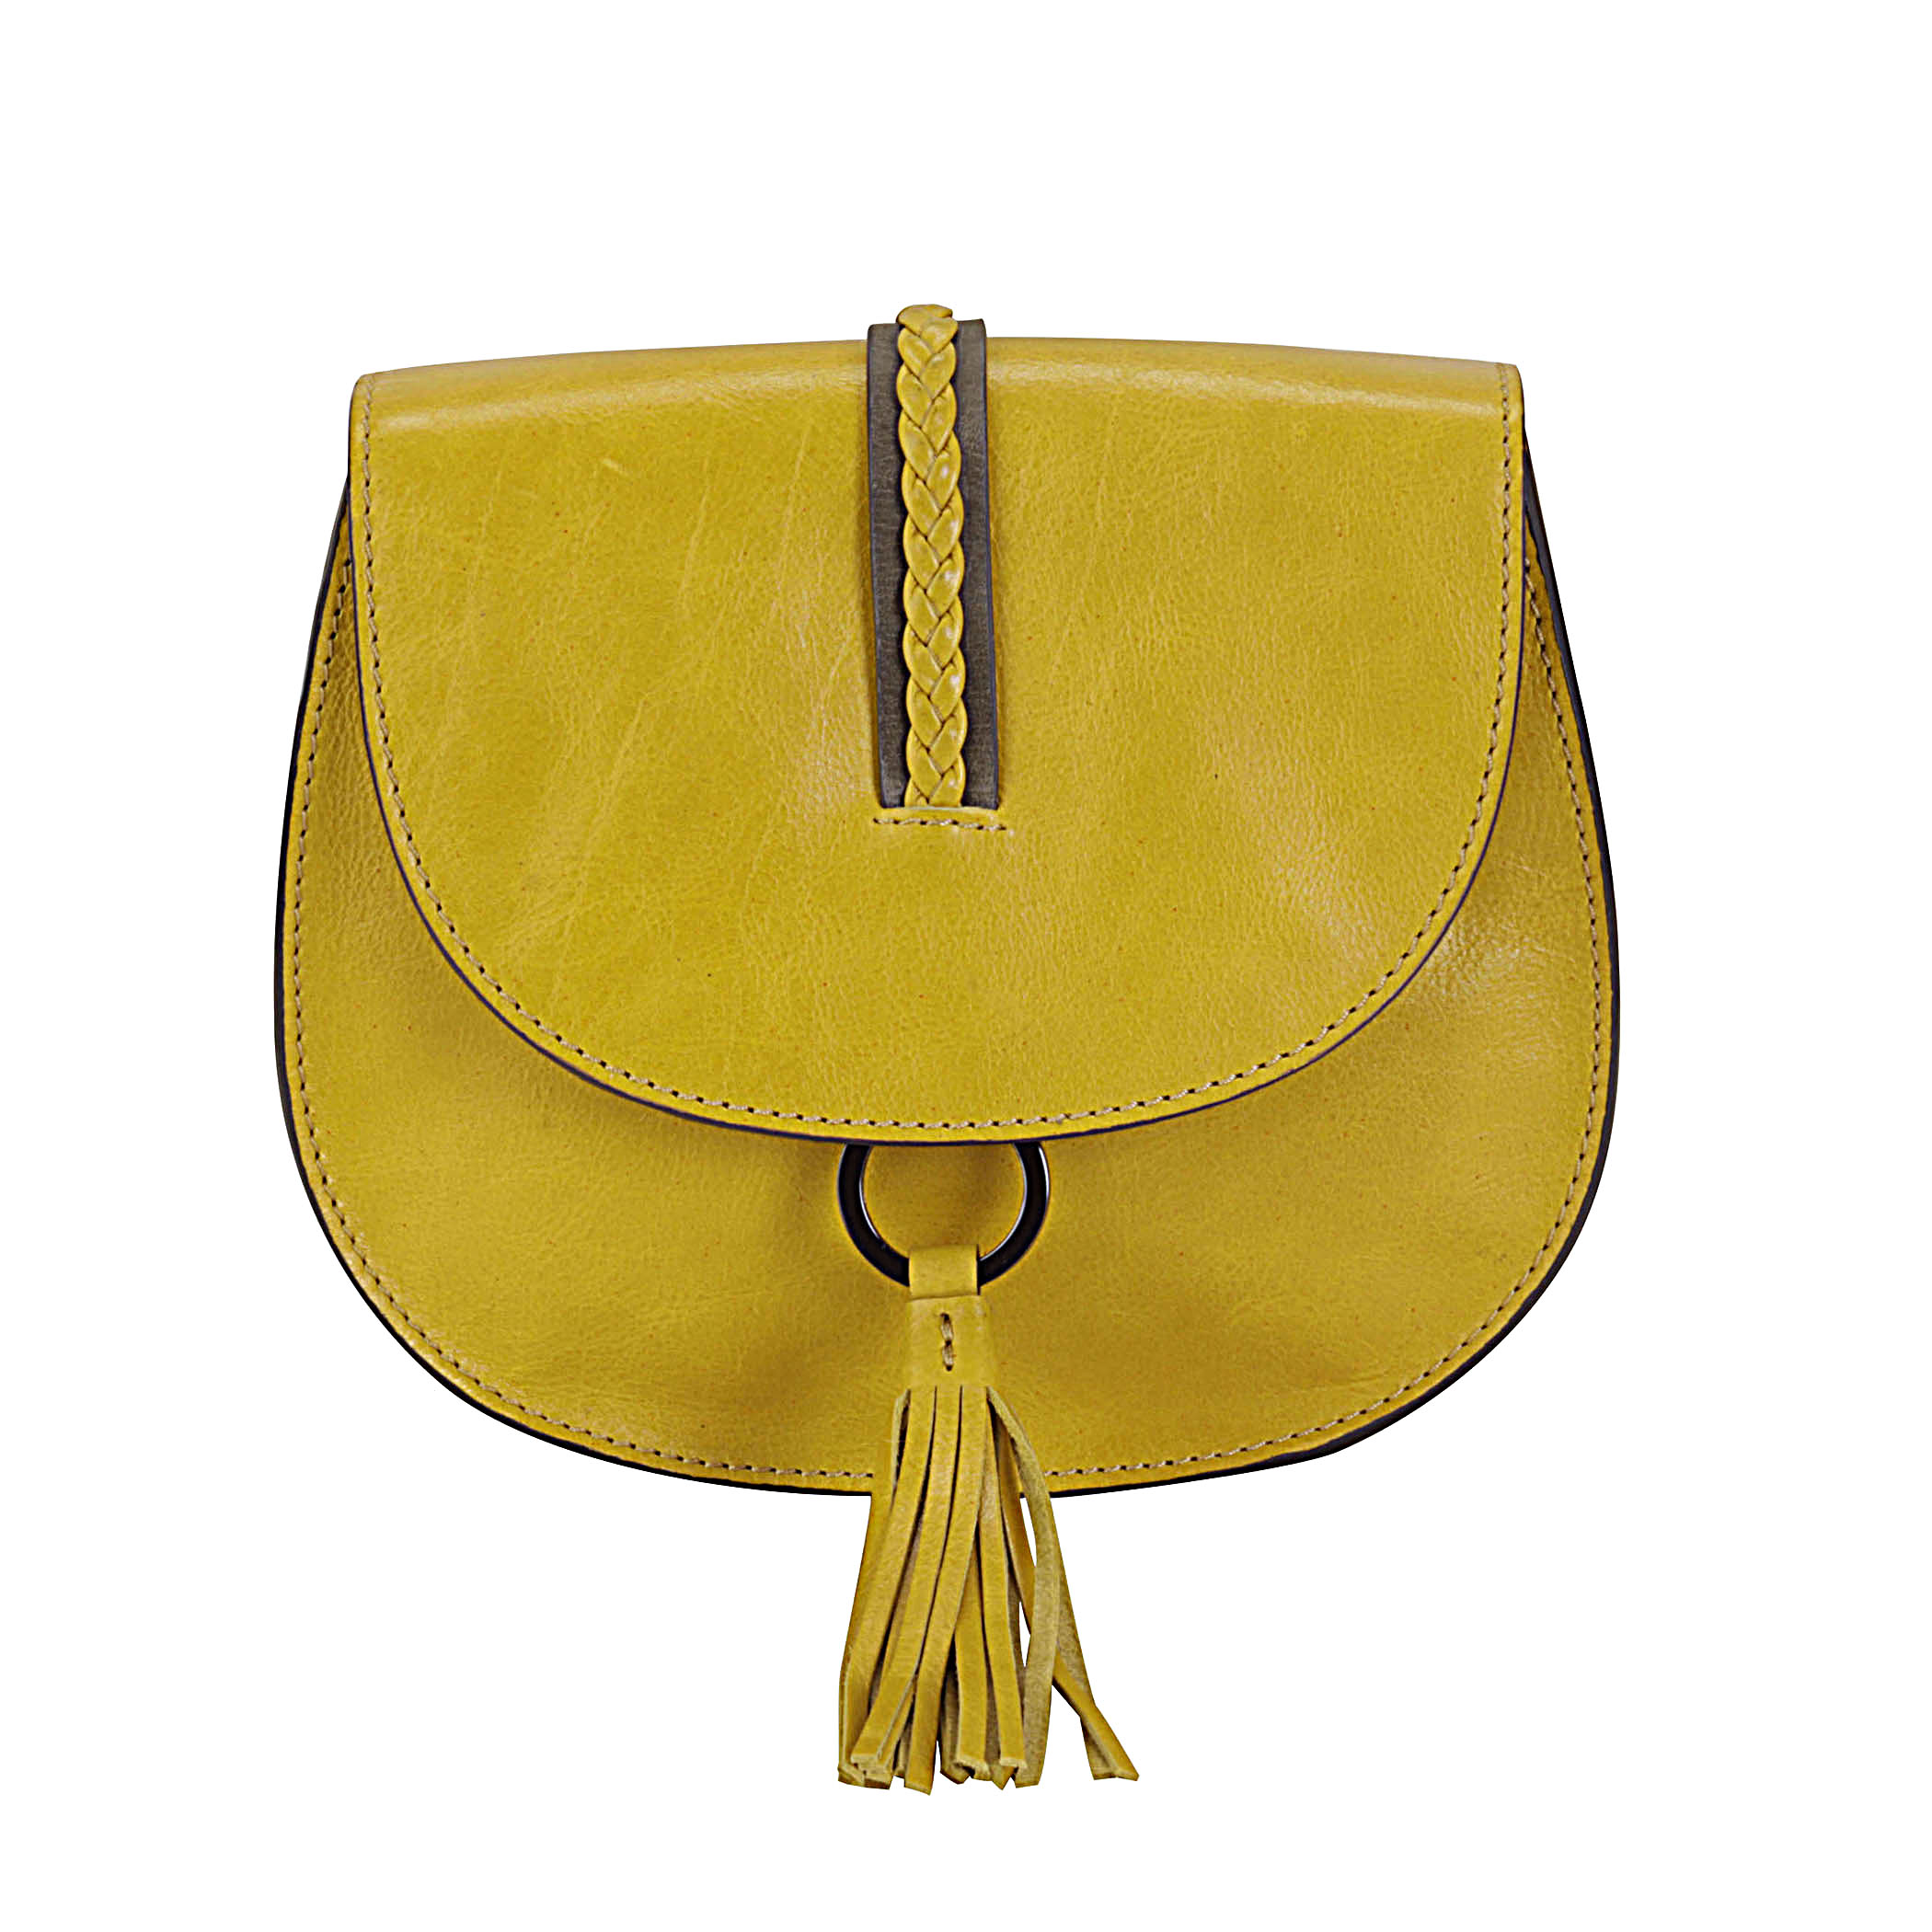 Ring Saddle Bag - Tango Yellow